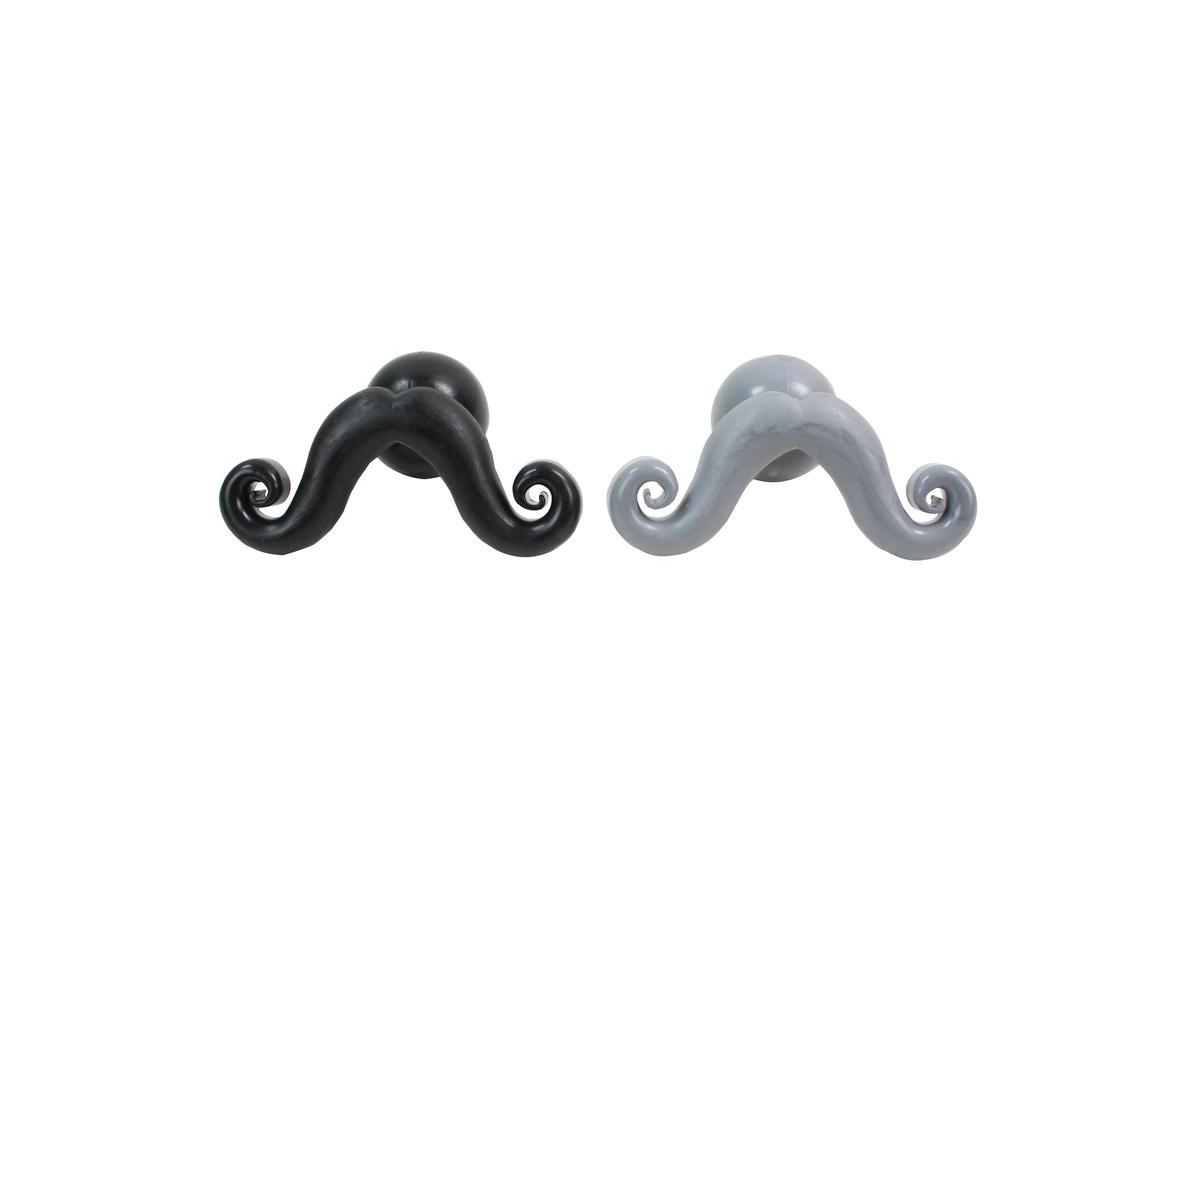 Jouet dur moustache - Caoutchouc - 13 x 8 x H 7 cm - Noir et gris